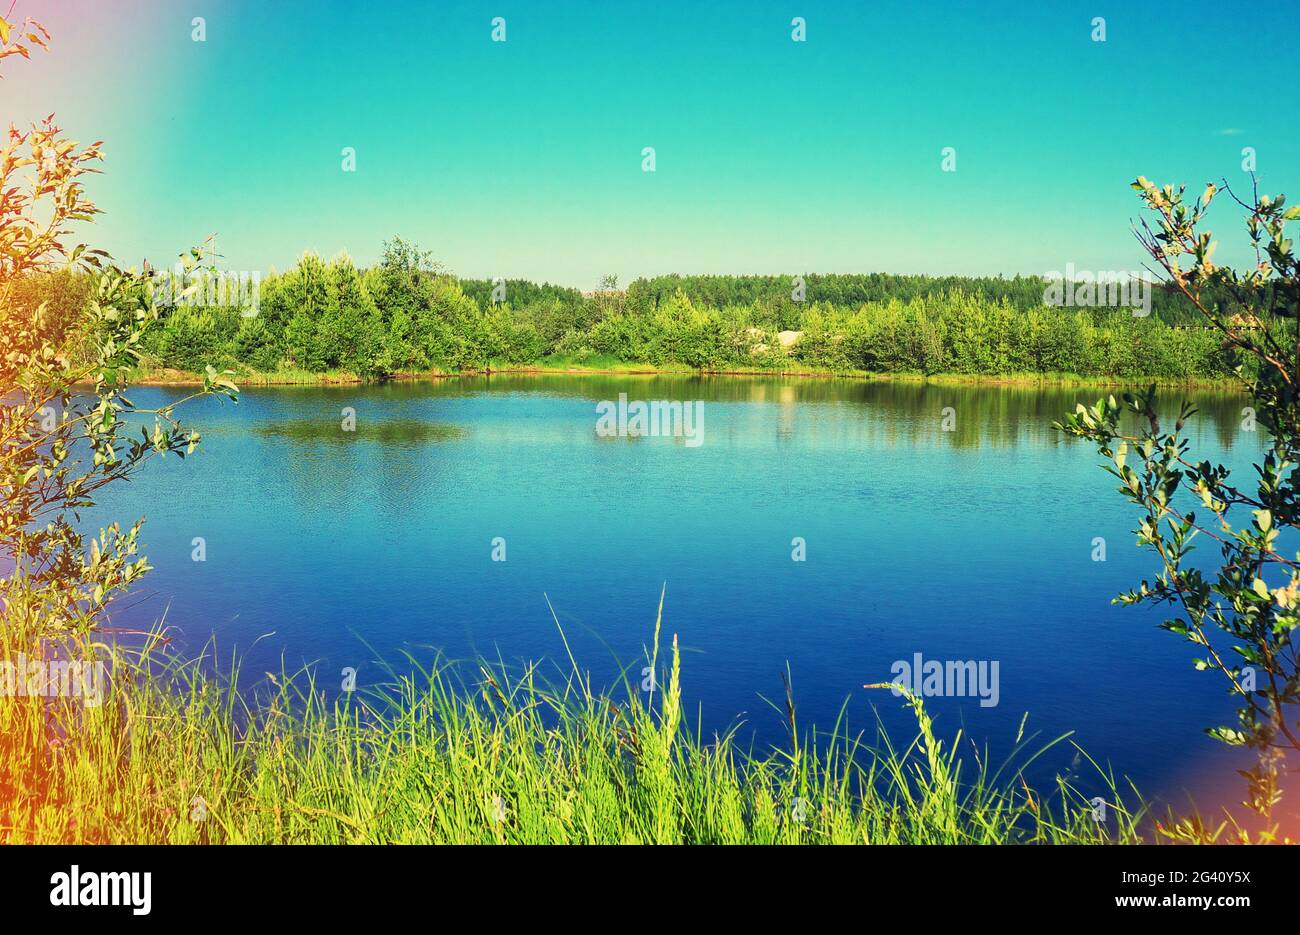 lac forestier en été, jour ensoleillé, ciel clair, effet vintage, couleurs décolorées Banque D'Images